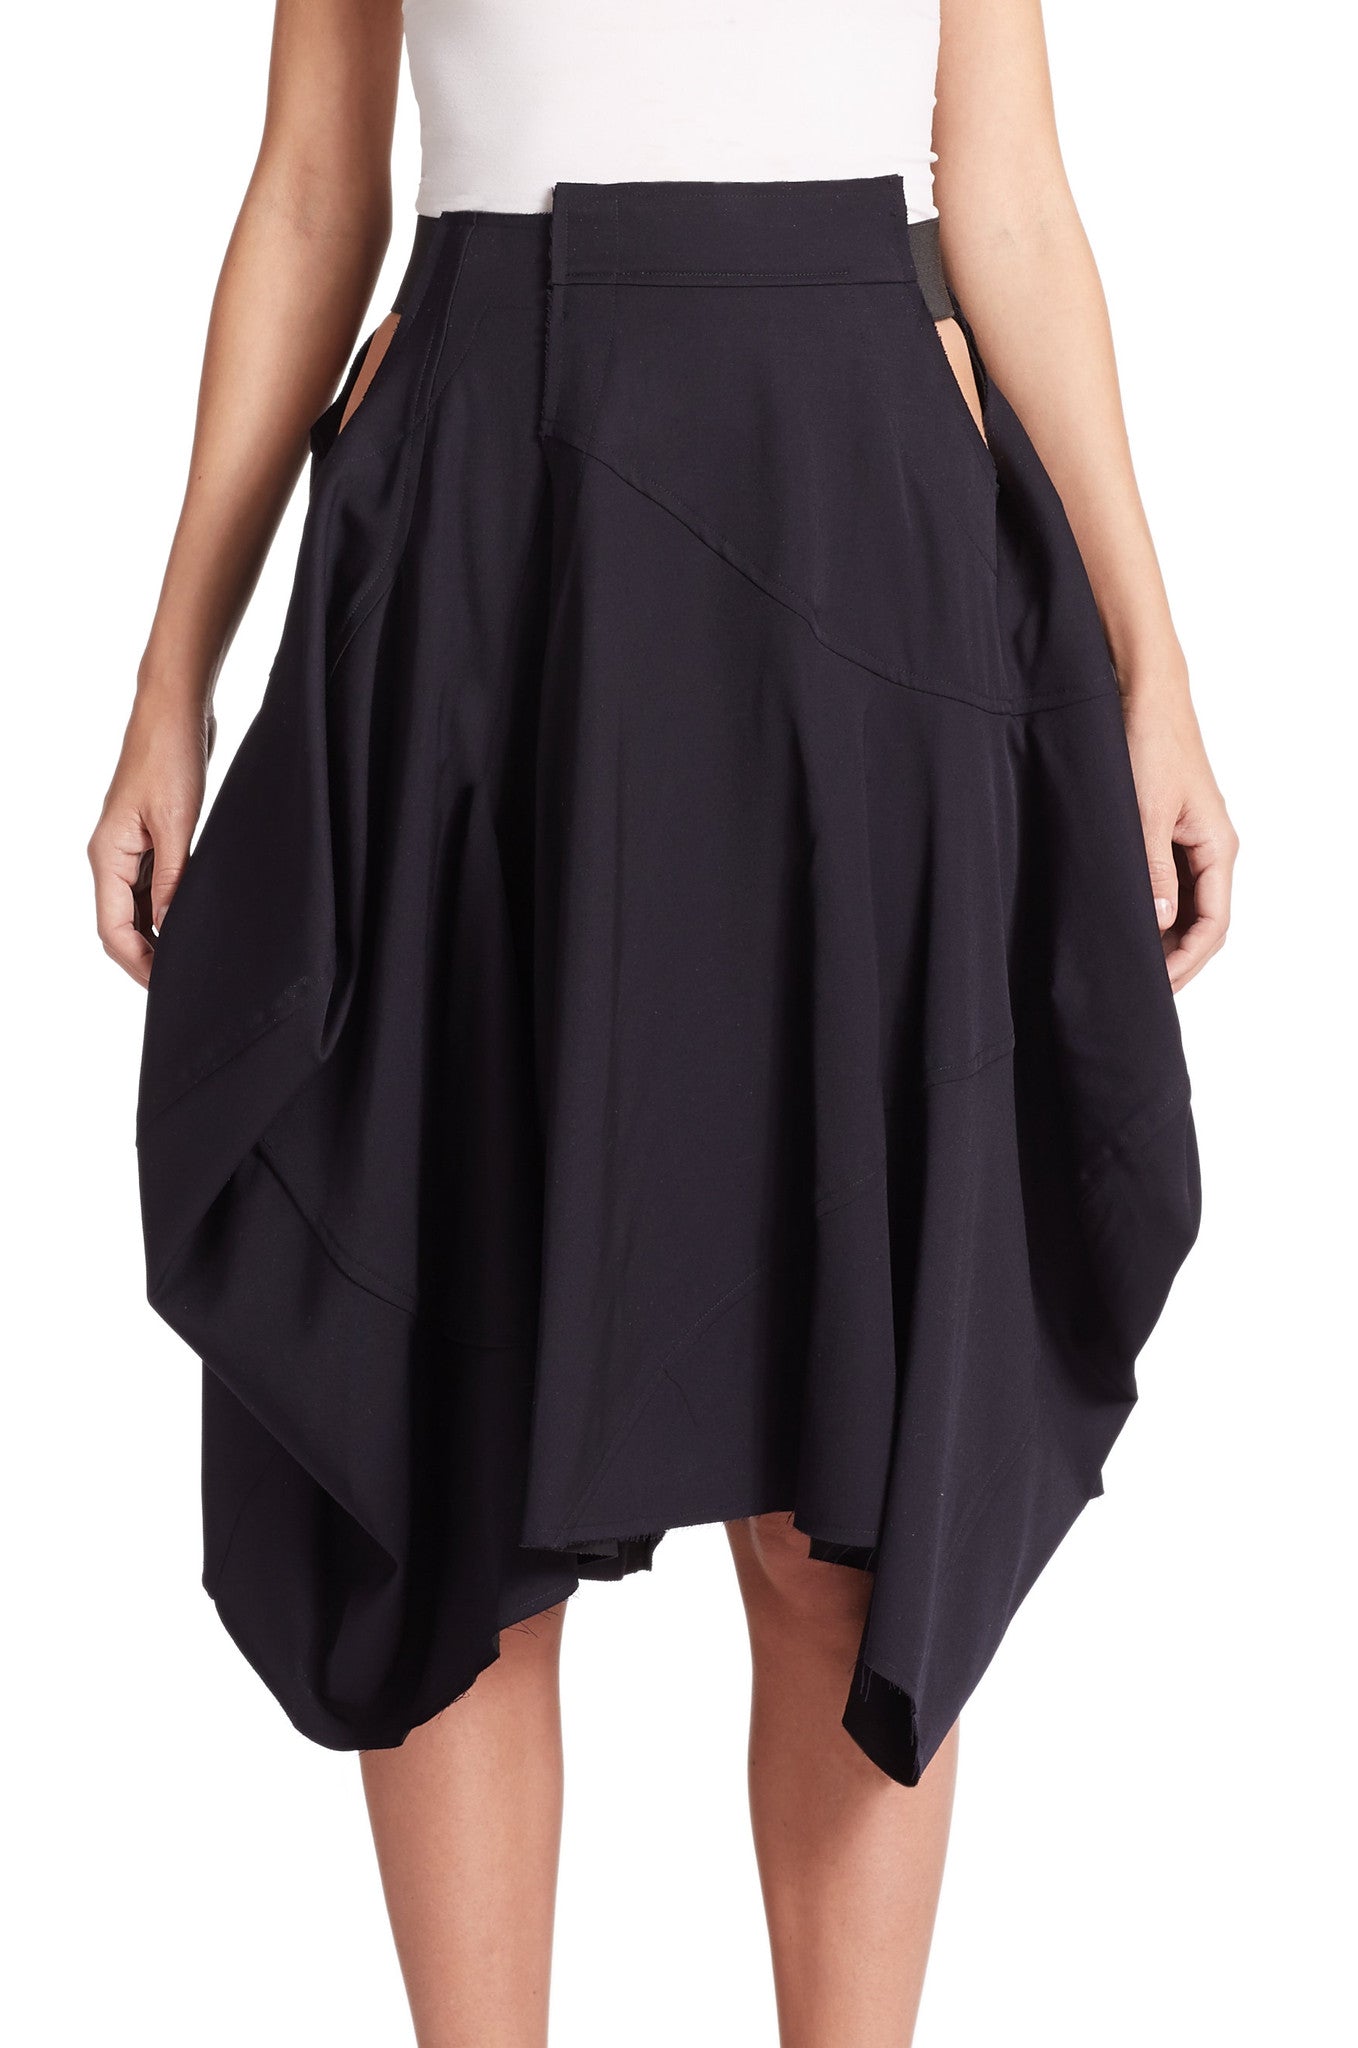 Women Loose Fitting Black Asymmetrical Hybrid Shorts Skirt // Draped Skirt